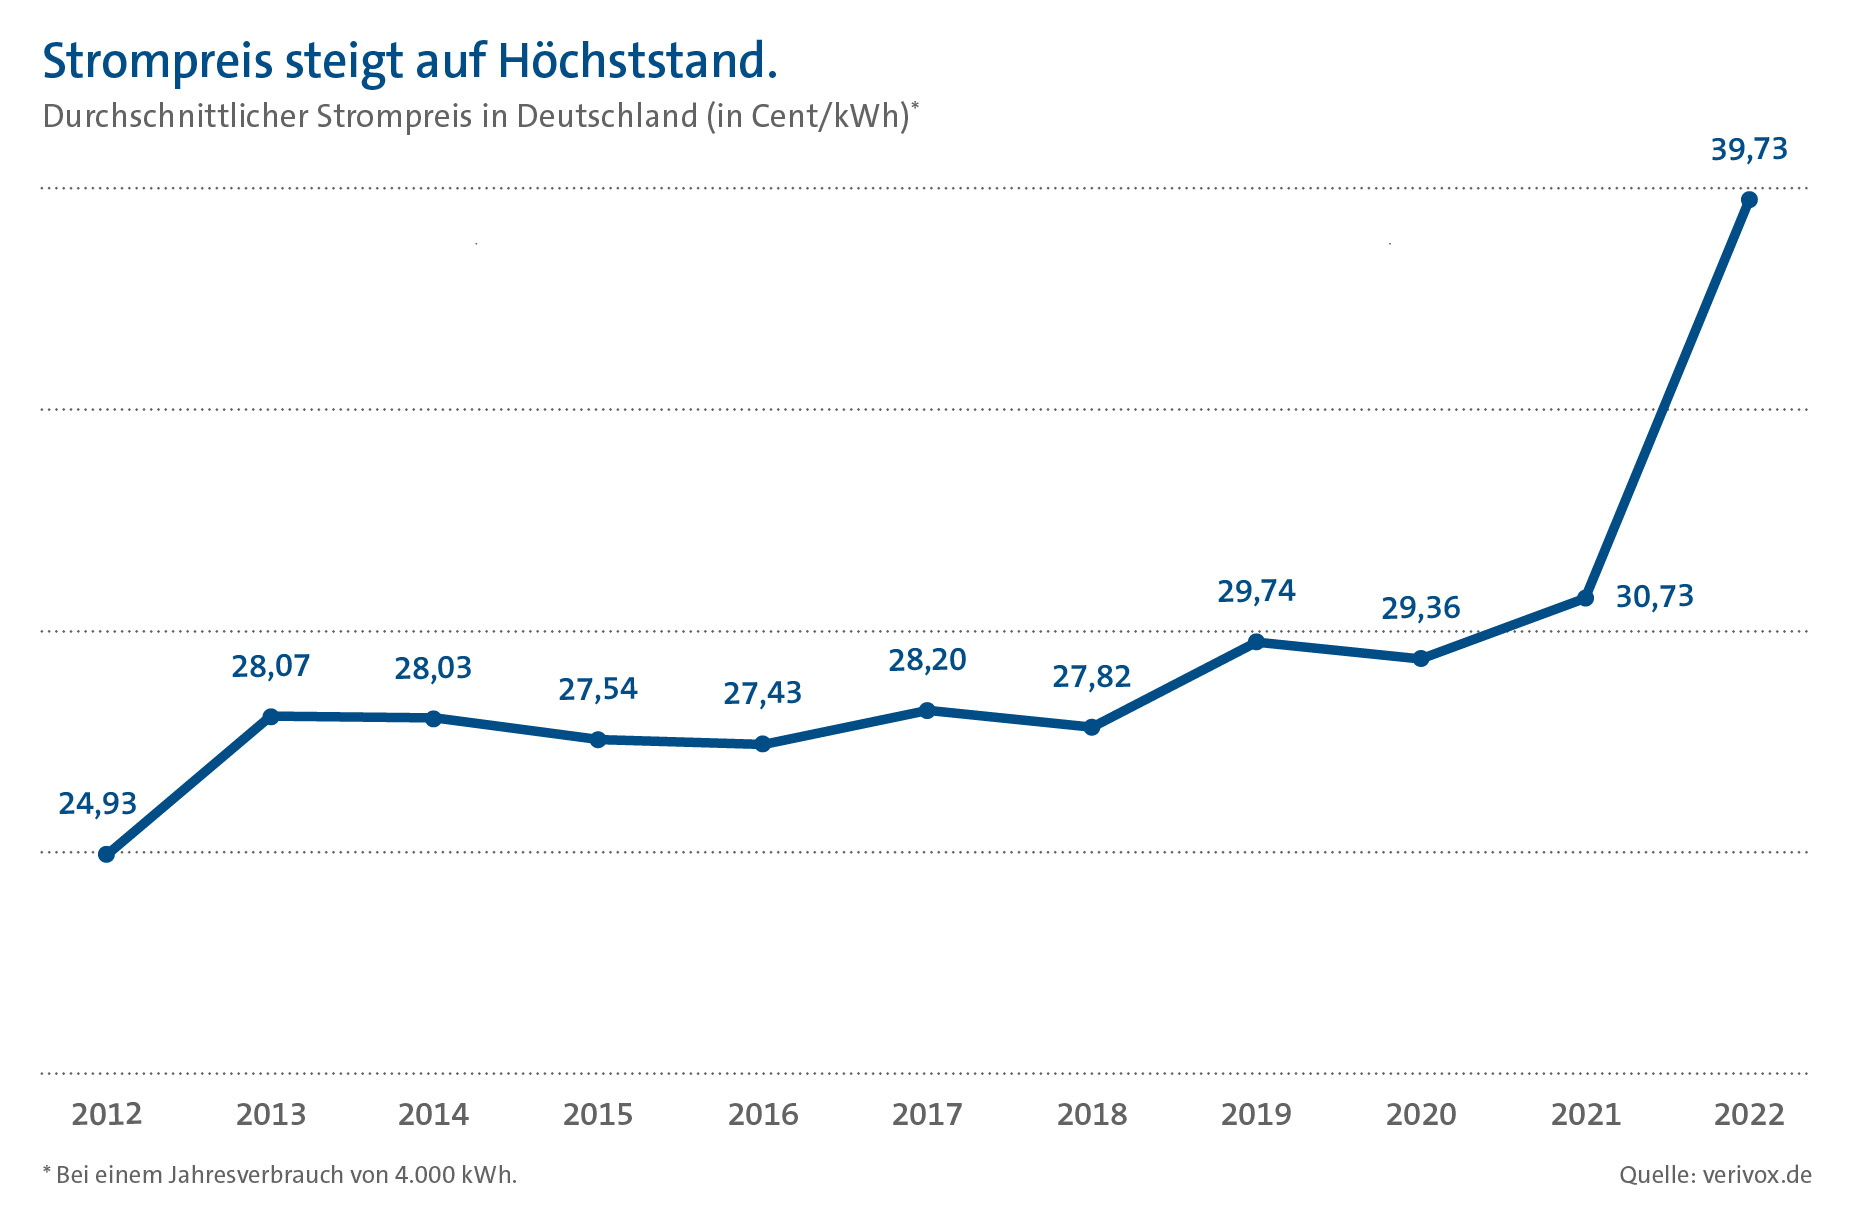 Diagramm: Entwicklung des durchschnittlichen Strompreises in Deutschland in den Jahren 2012 bis 2022.